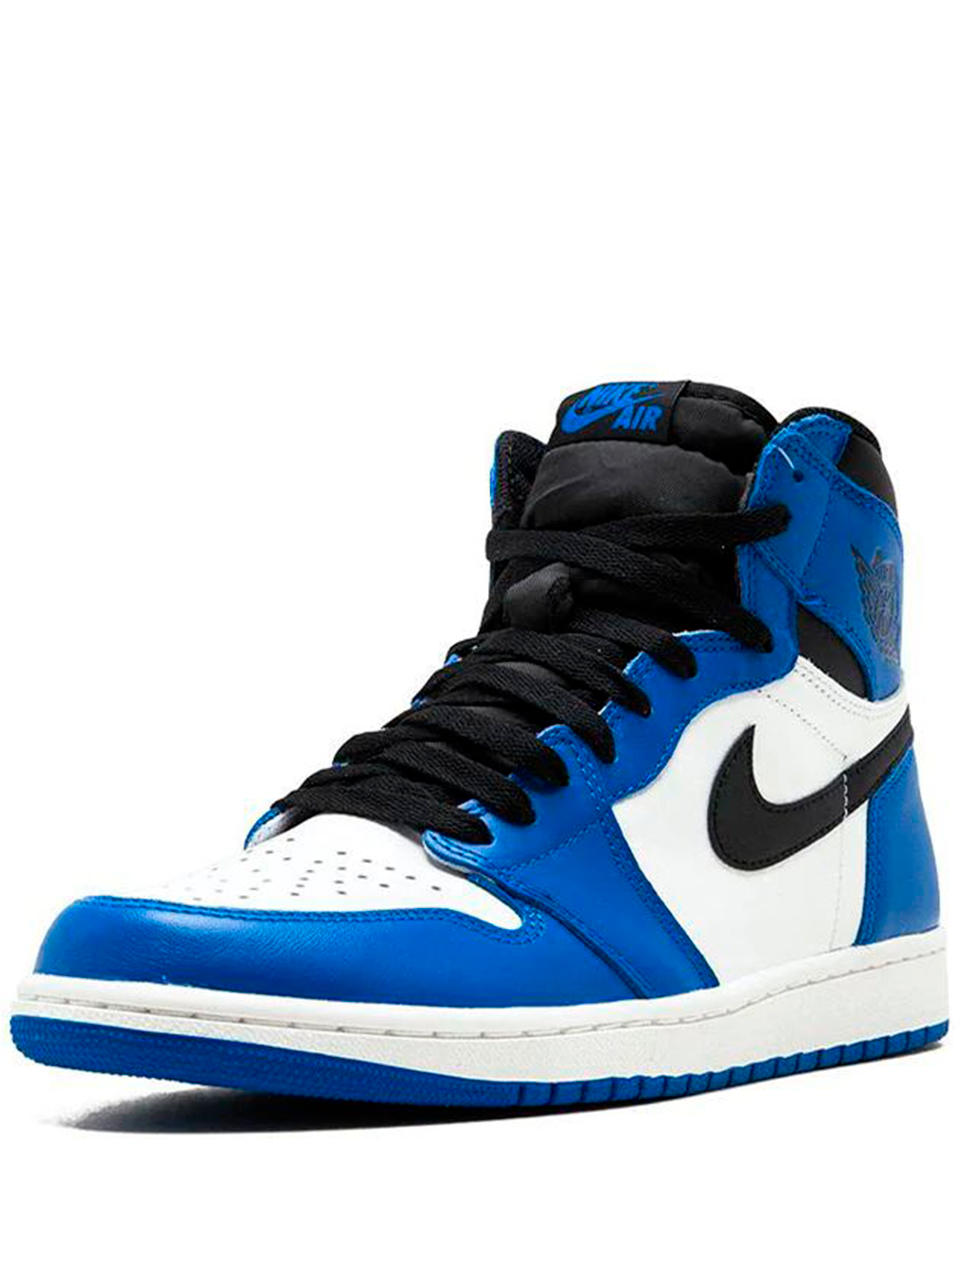 Imagem de: Tênis Nike Air Jordan 1 Retro High OG Azul e Branco